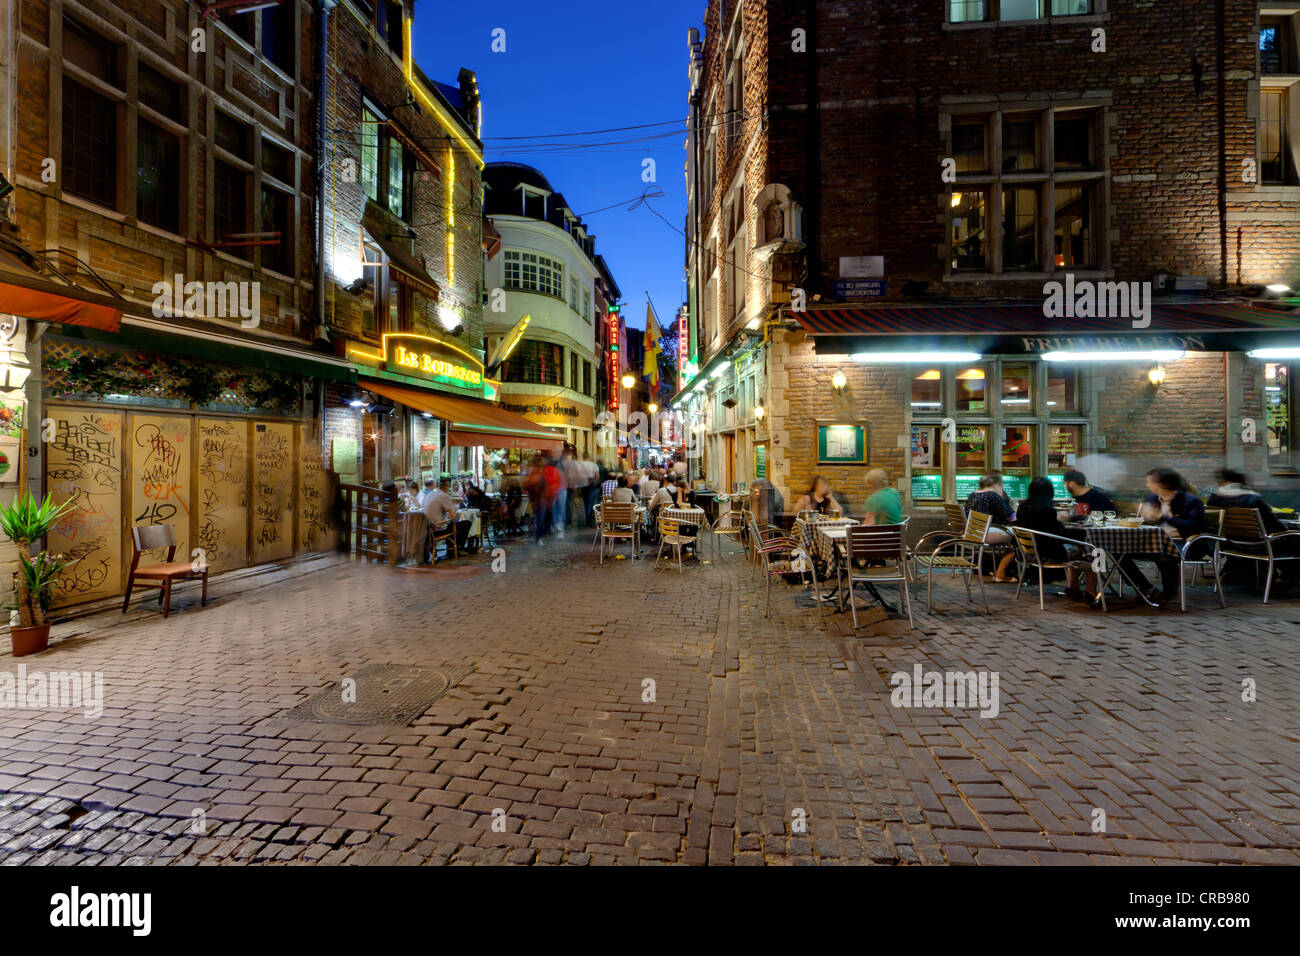 Street restaurants in the historic centre at night, Beenhouwersstraat, Brussels, Belgium, Europe Stock Photo